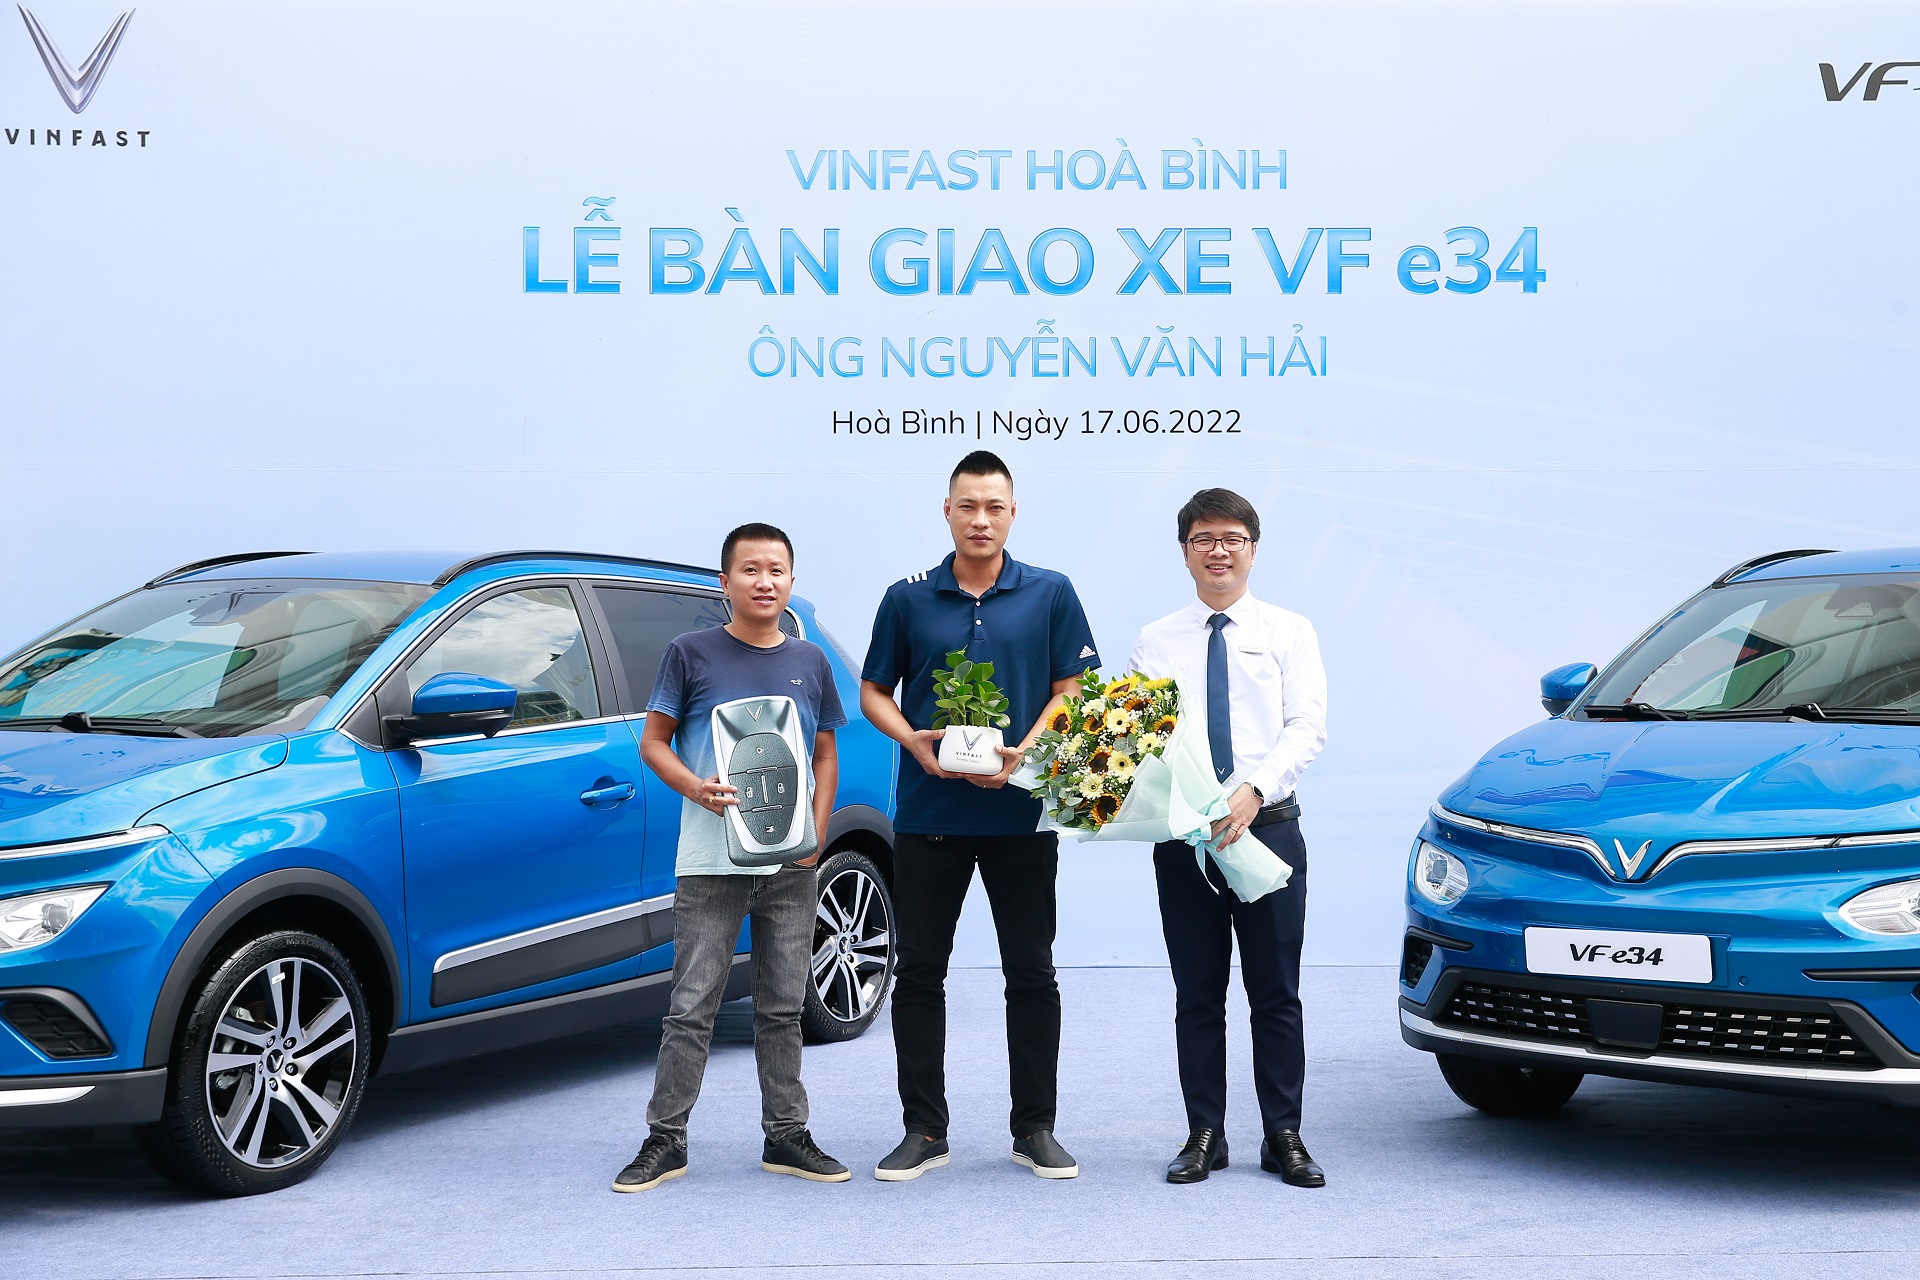 Kinh tế - Lô xe ô tô điện VinFast VF e34 đầu tiên chạy dịch vụ tại Hoà Bình